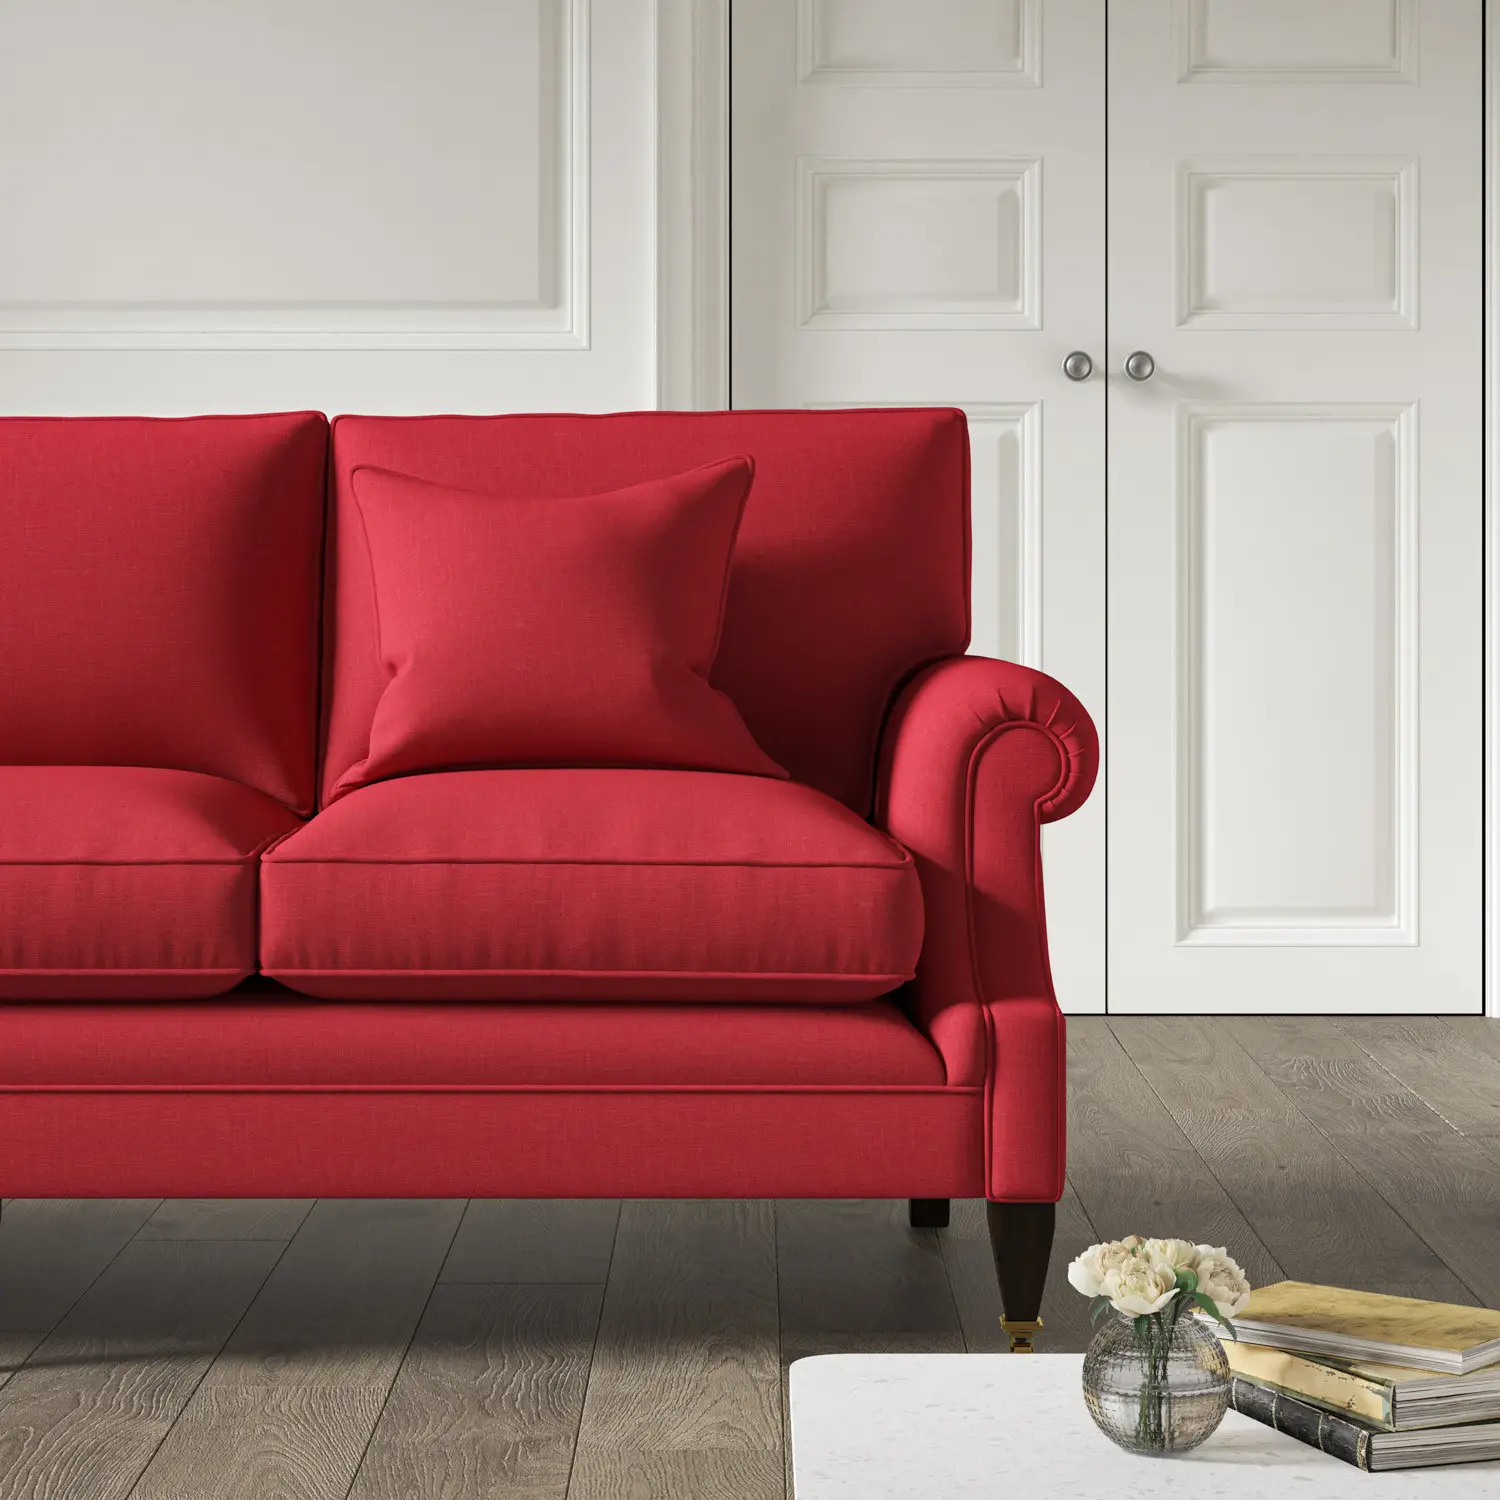 Crimson sofa